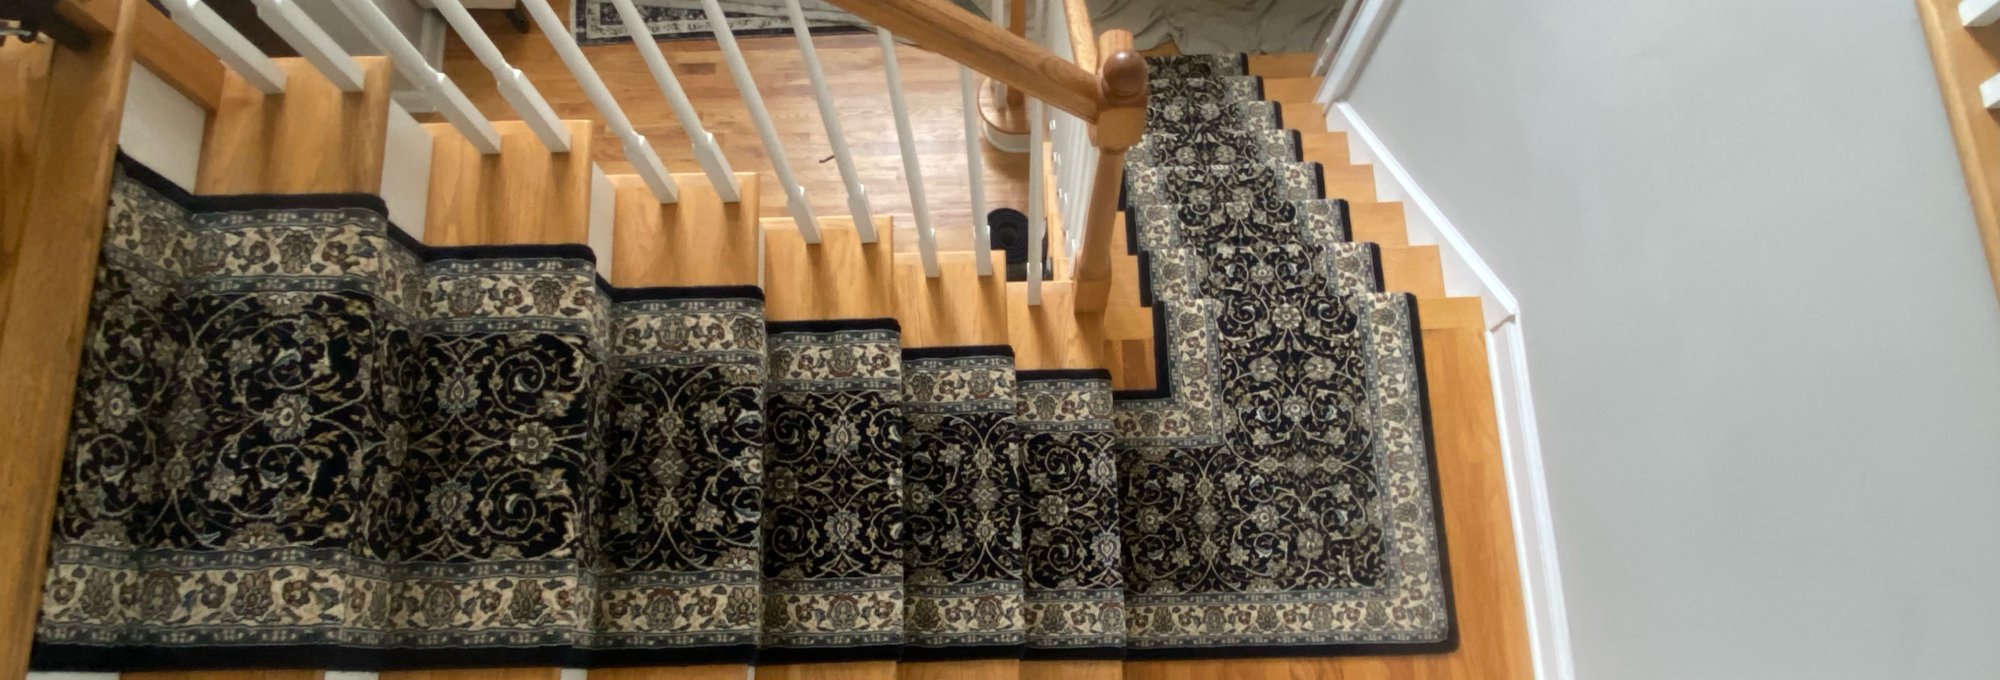 Roberts-Carpeting-Hero - Roberts Carpeting and Fine Floors in PA